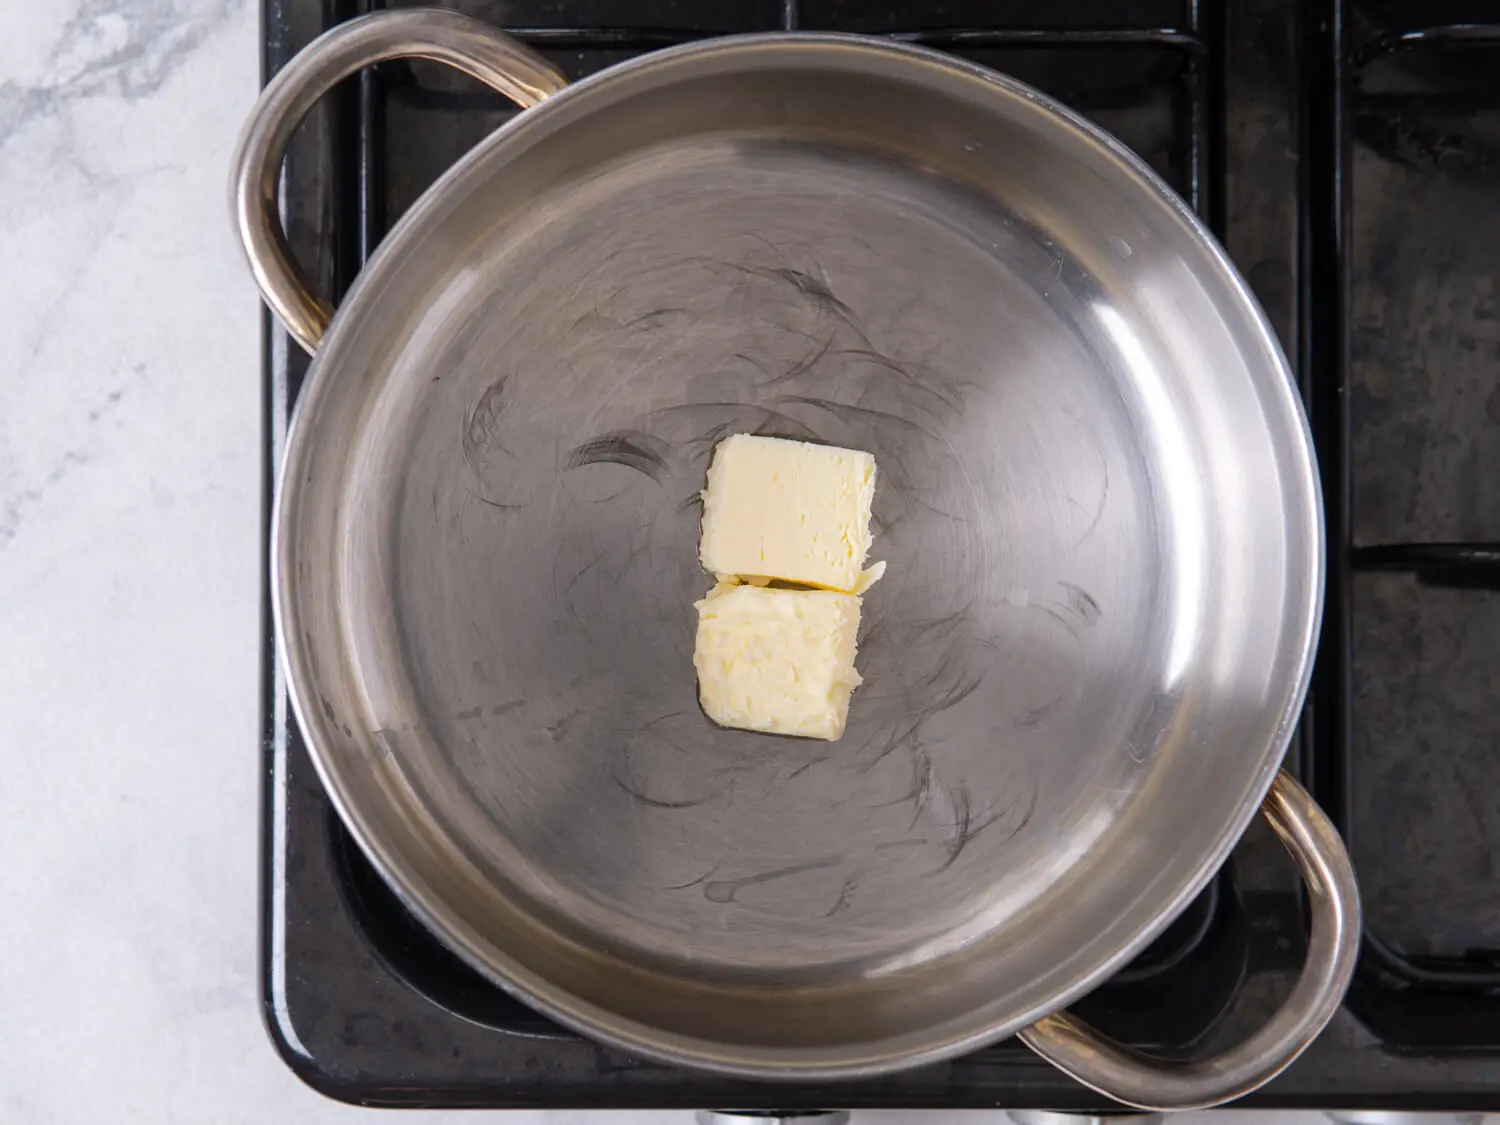 In a large saucepan over medium heat, melt the butter.